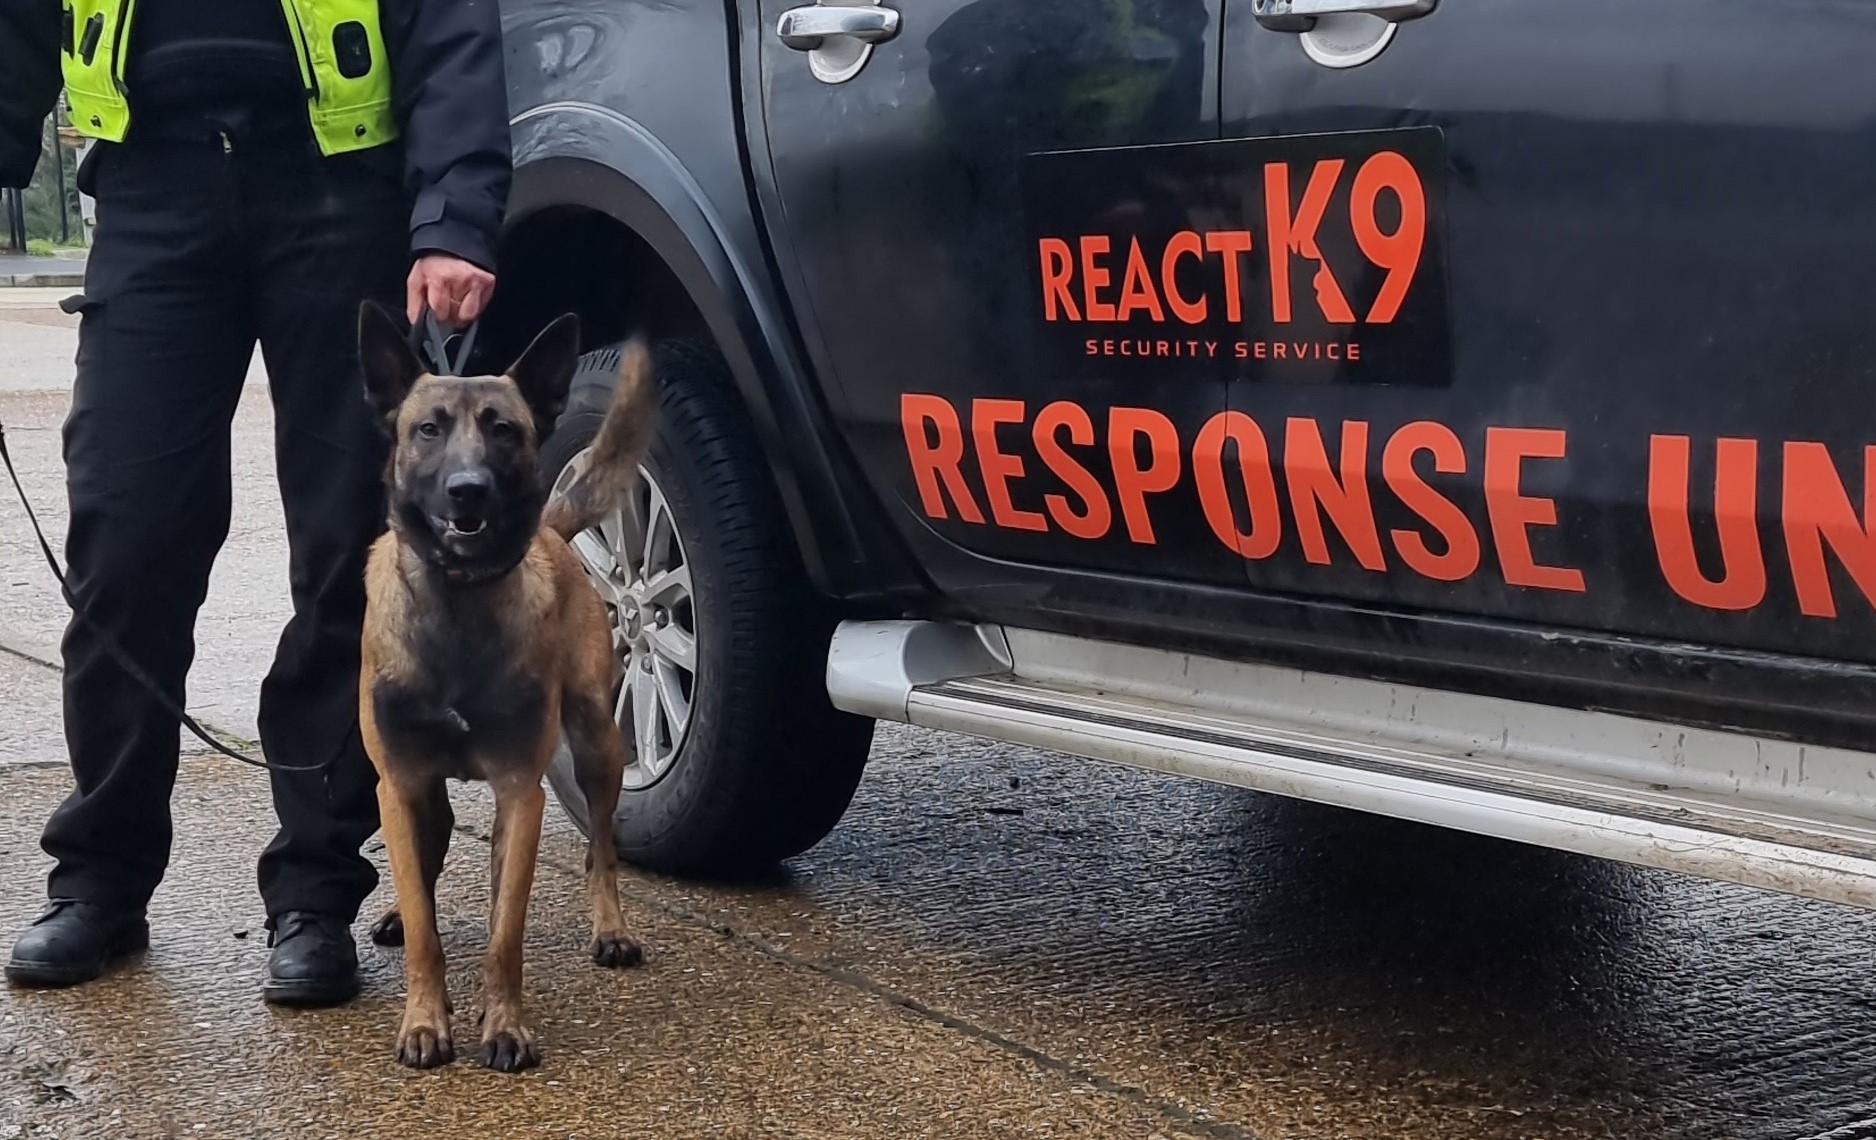 React K9 Dog Unit security image 4